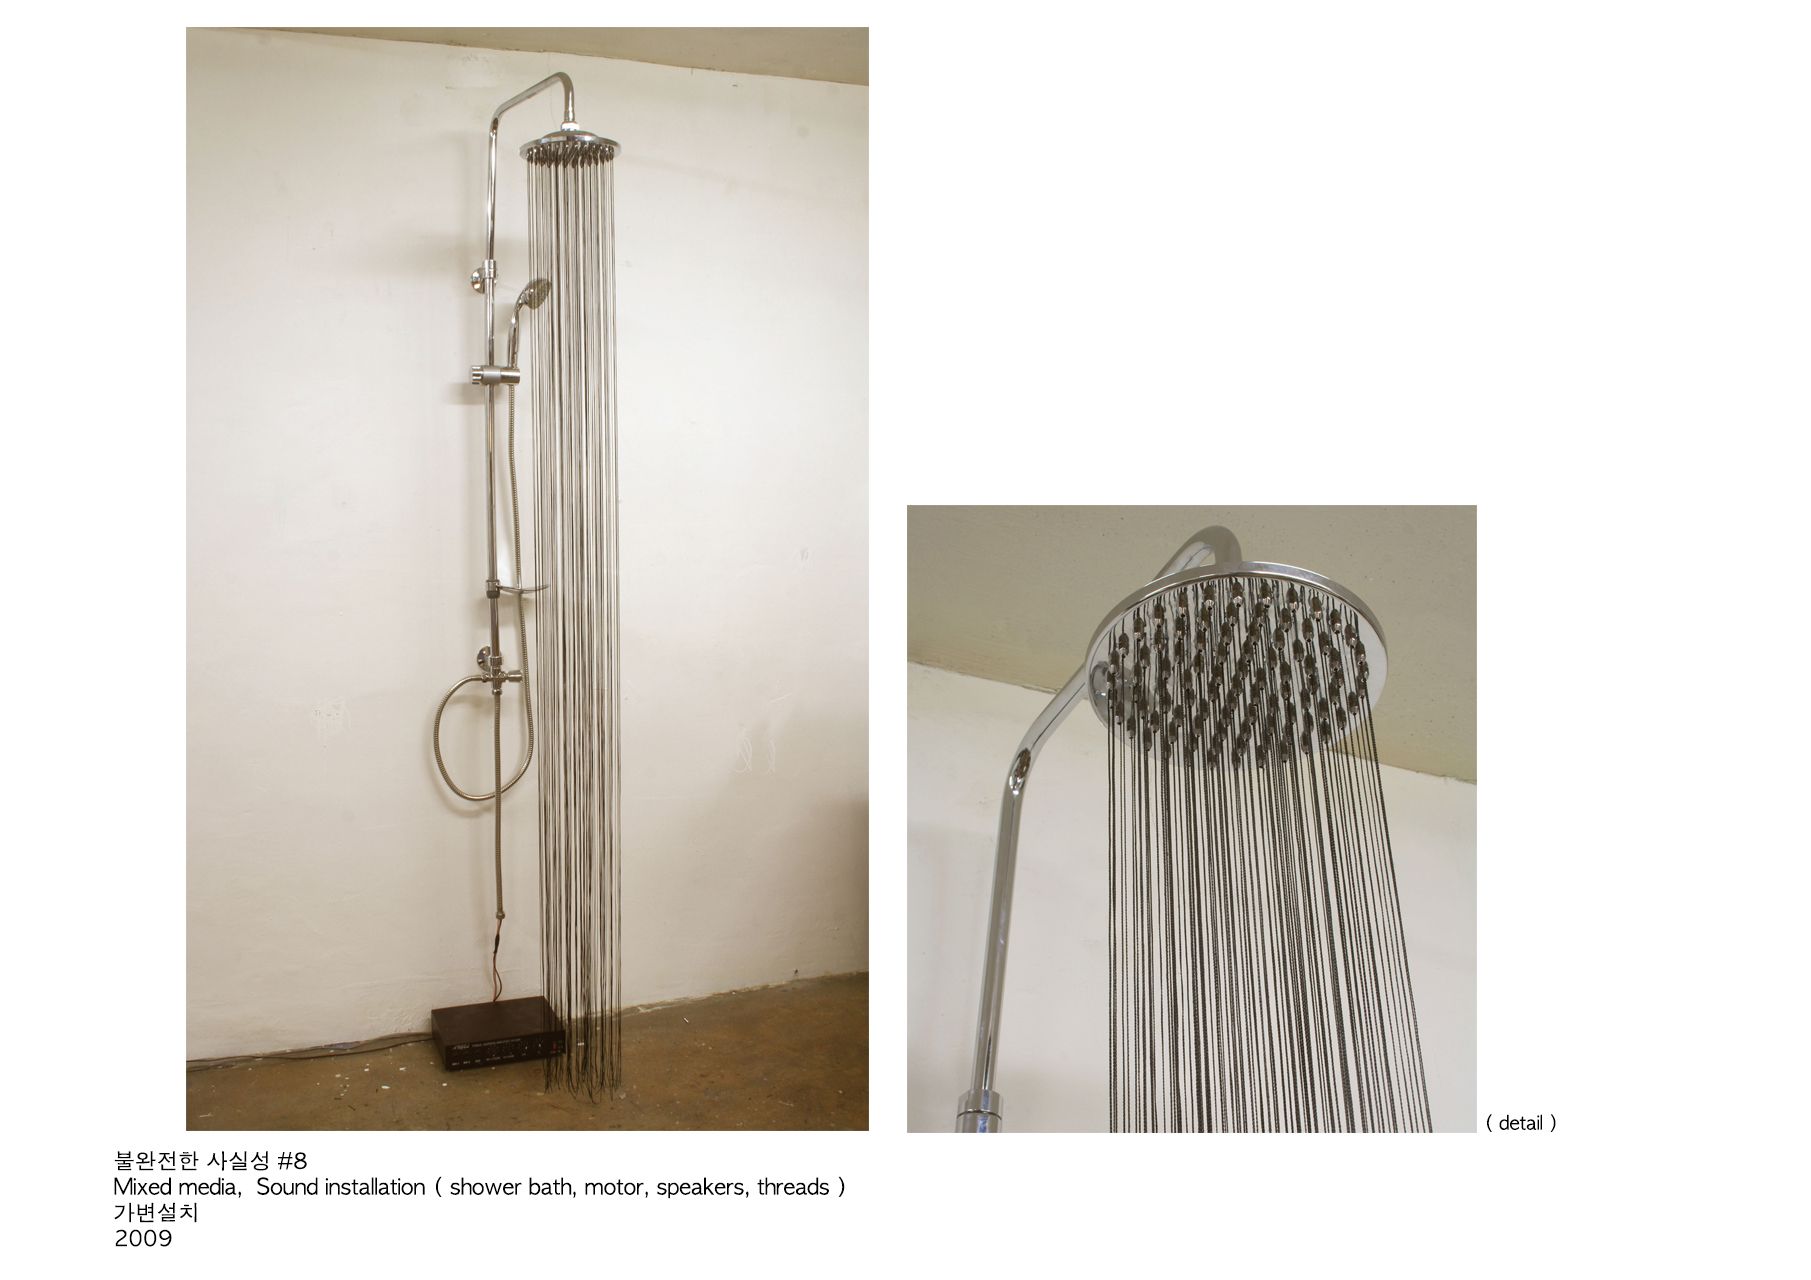 불완전한 사실성 #8_mixed media, sound installation(shower bath, motor, speakers, threads)_가변설치_2009